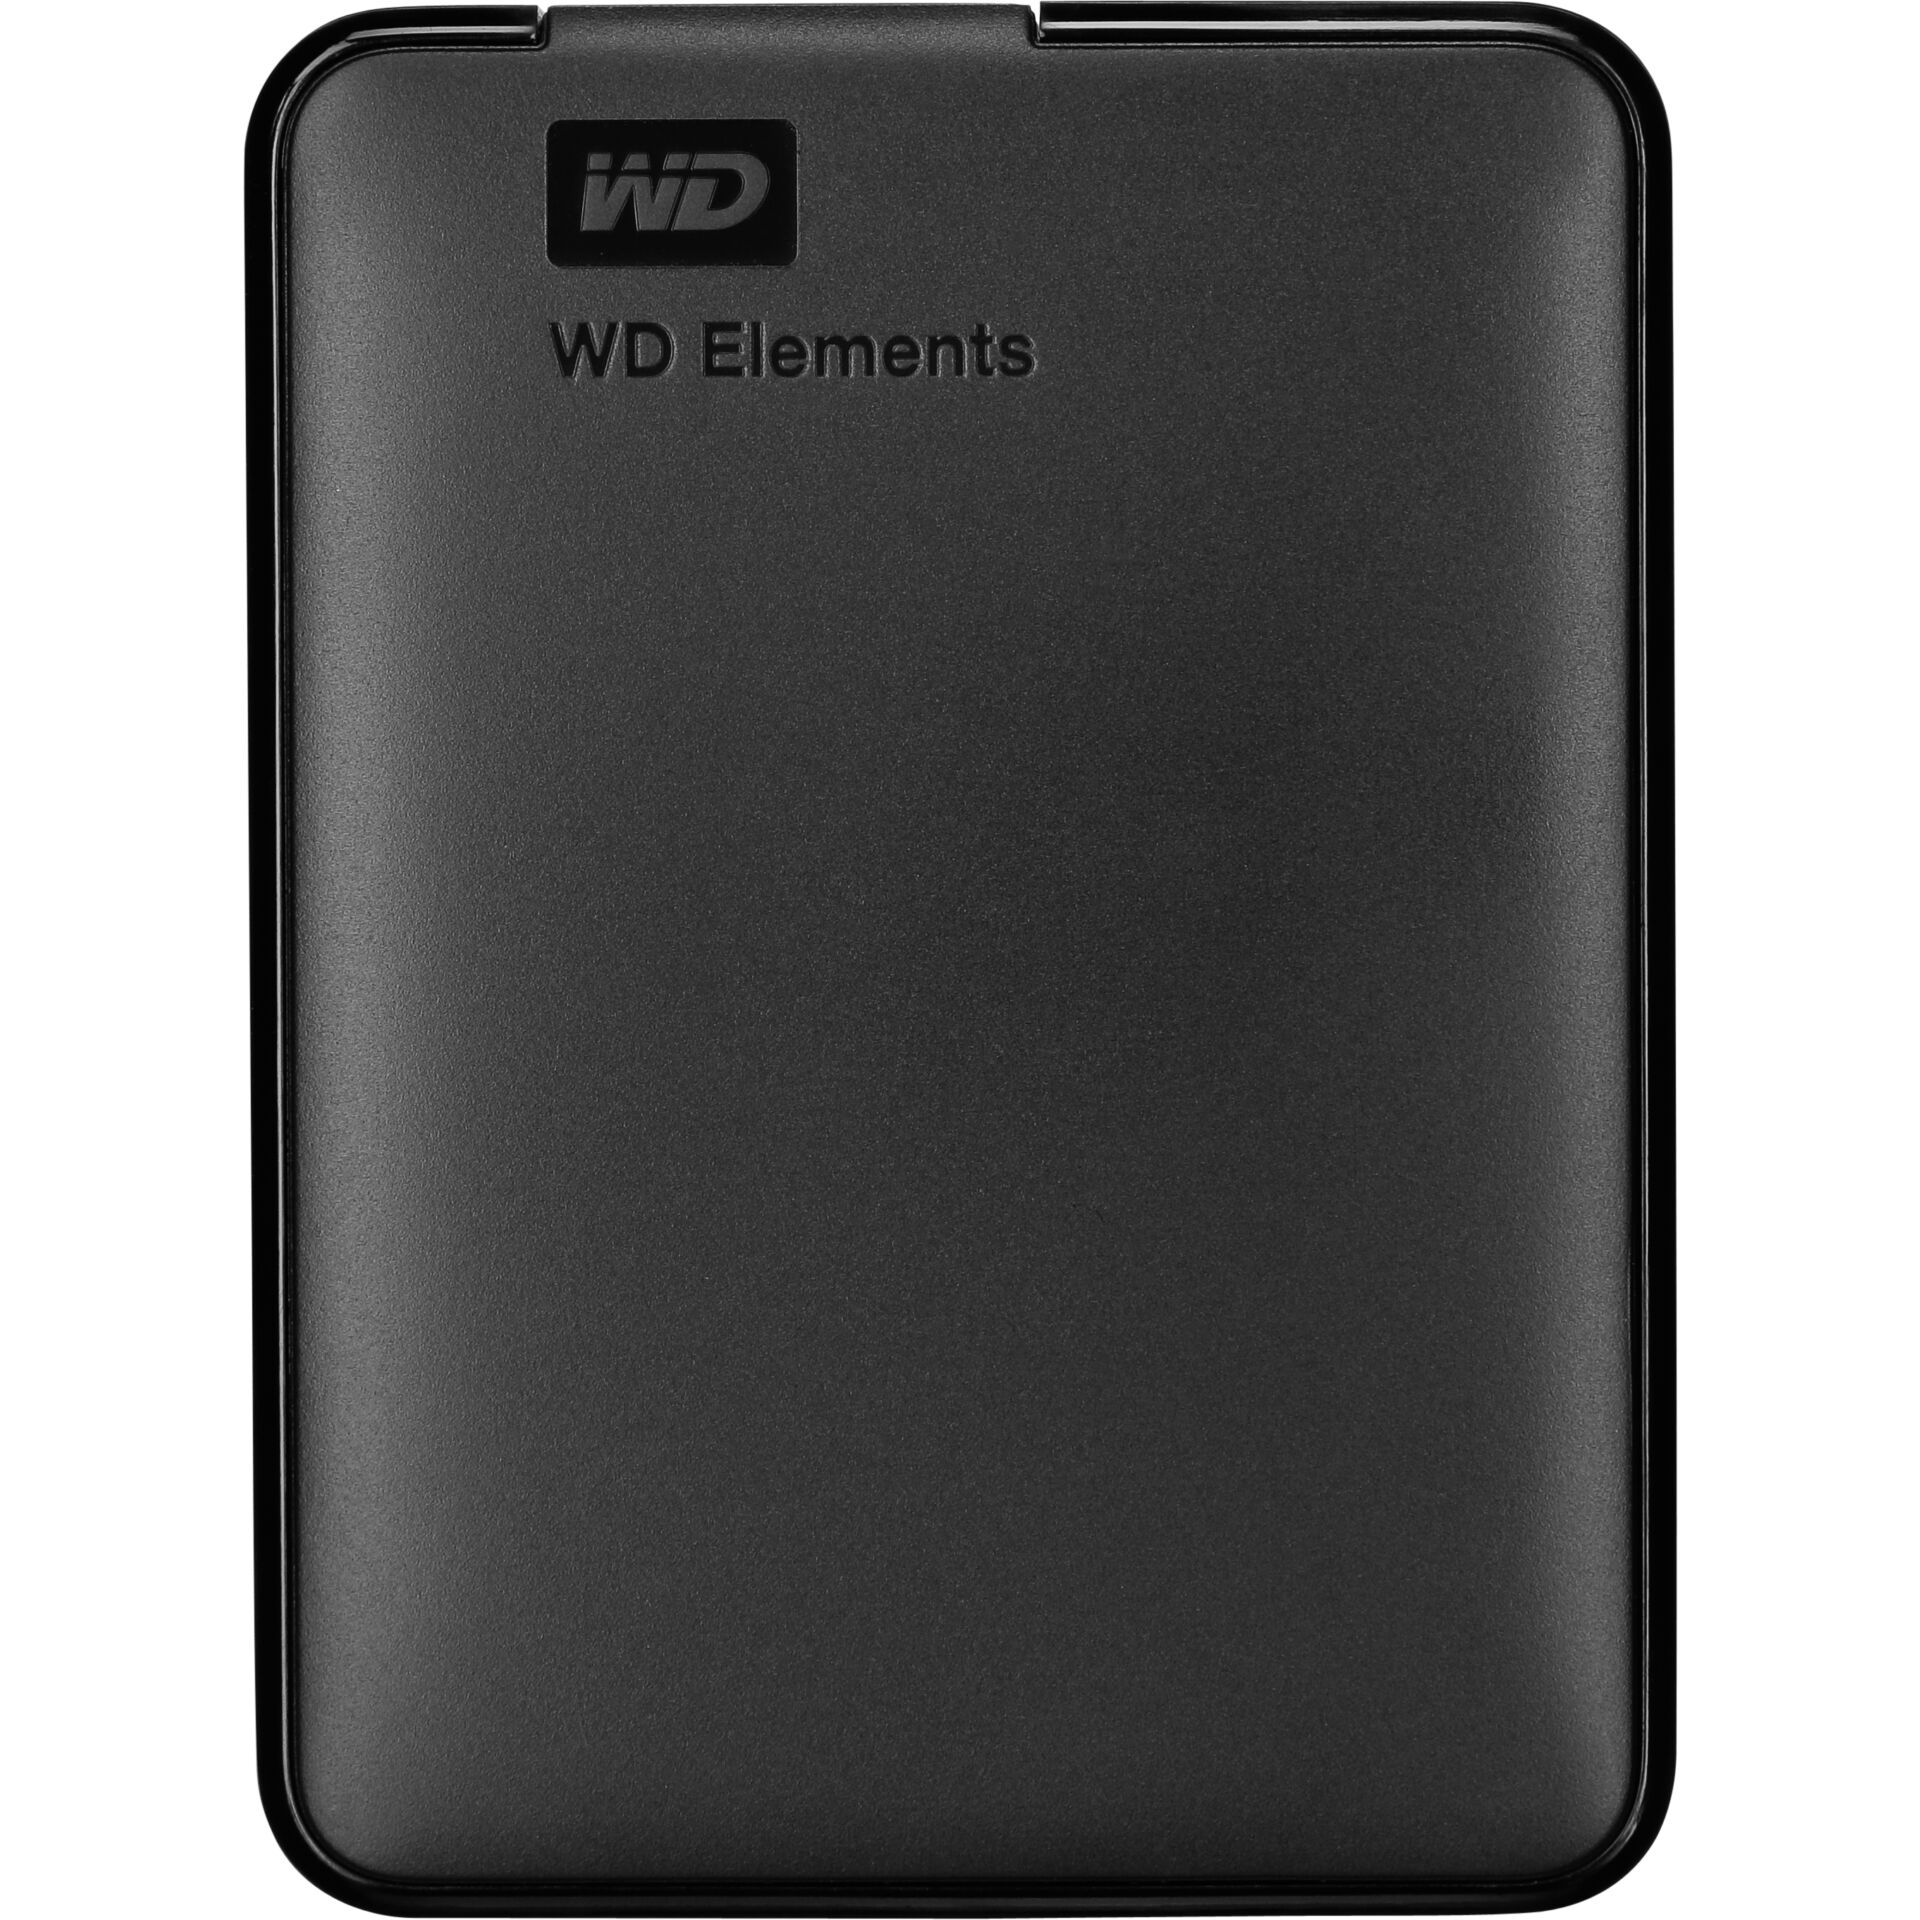 2.0 TB HDD WD Elements portable, schwarz USB 3.0 